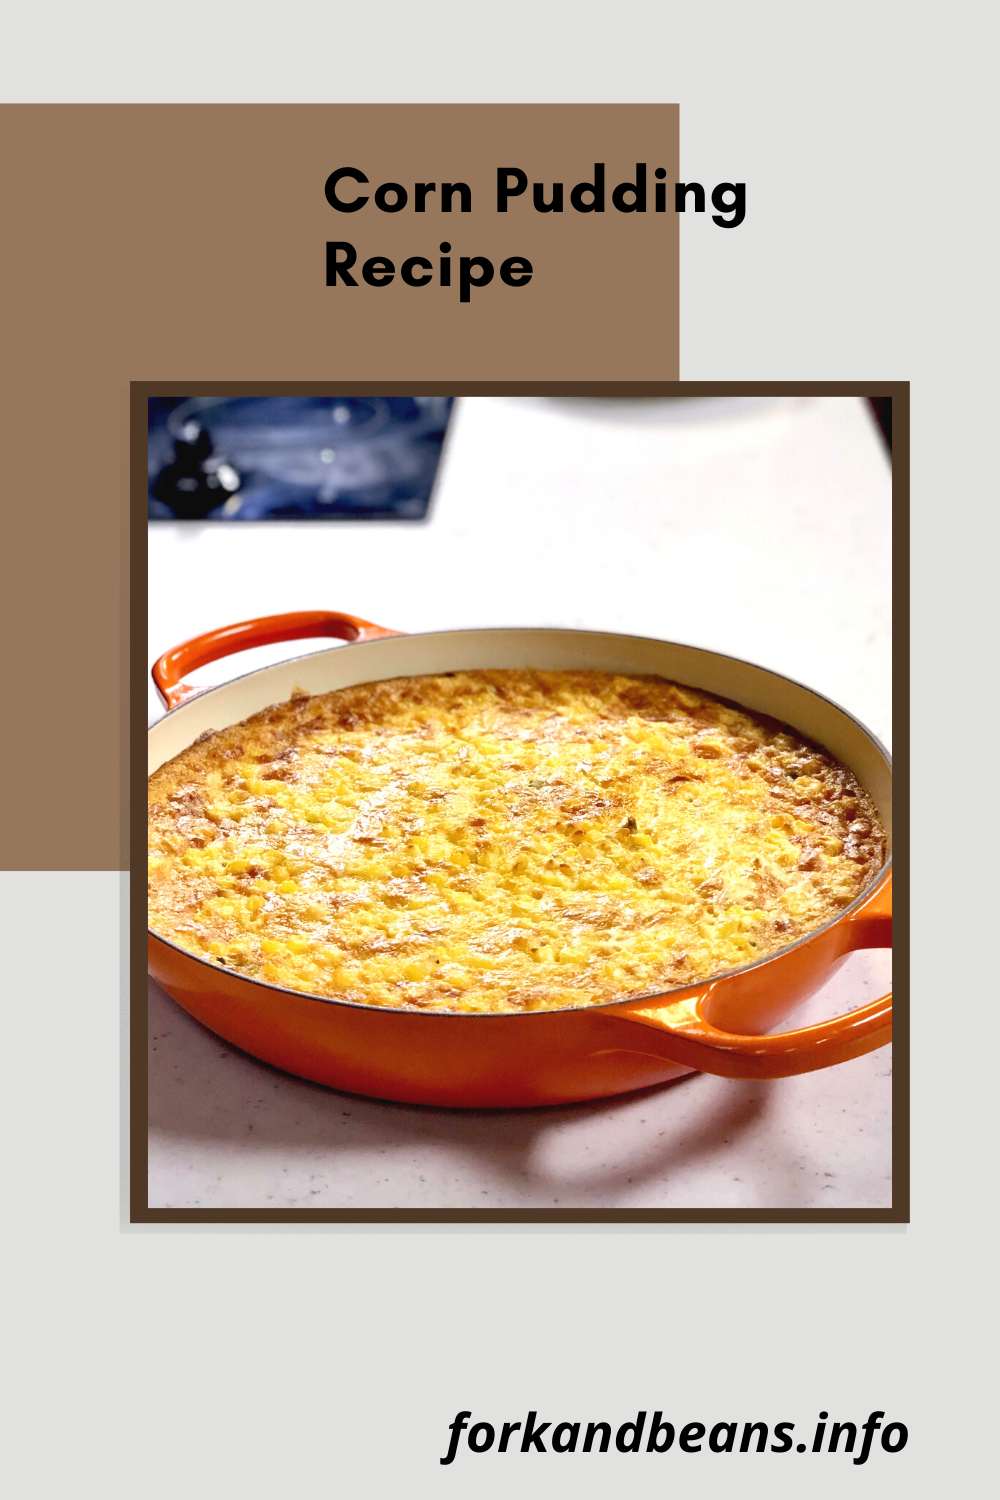 The Recipe for Corn Pudding